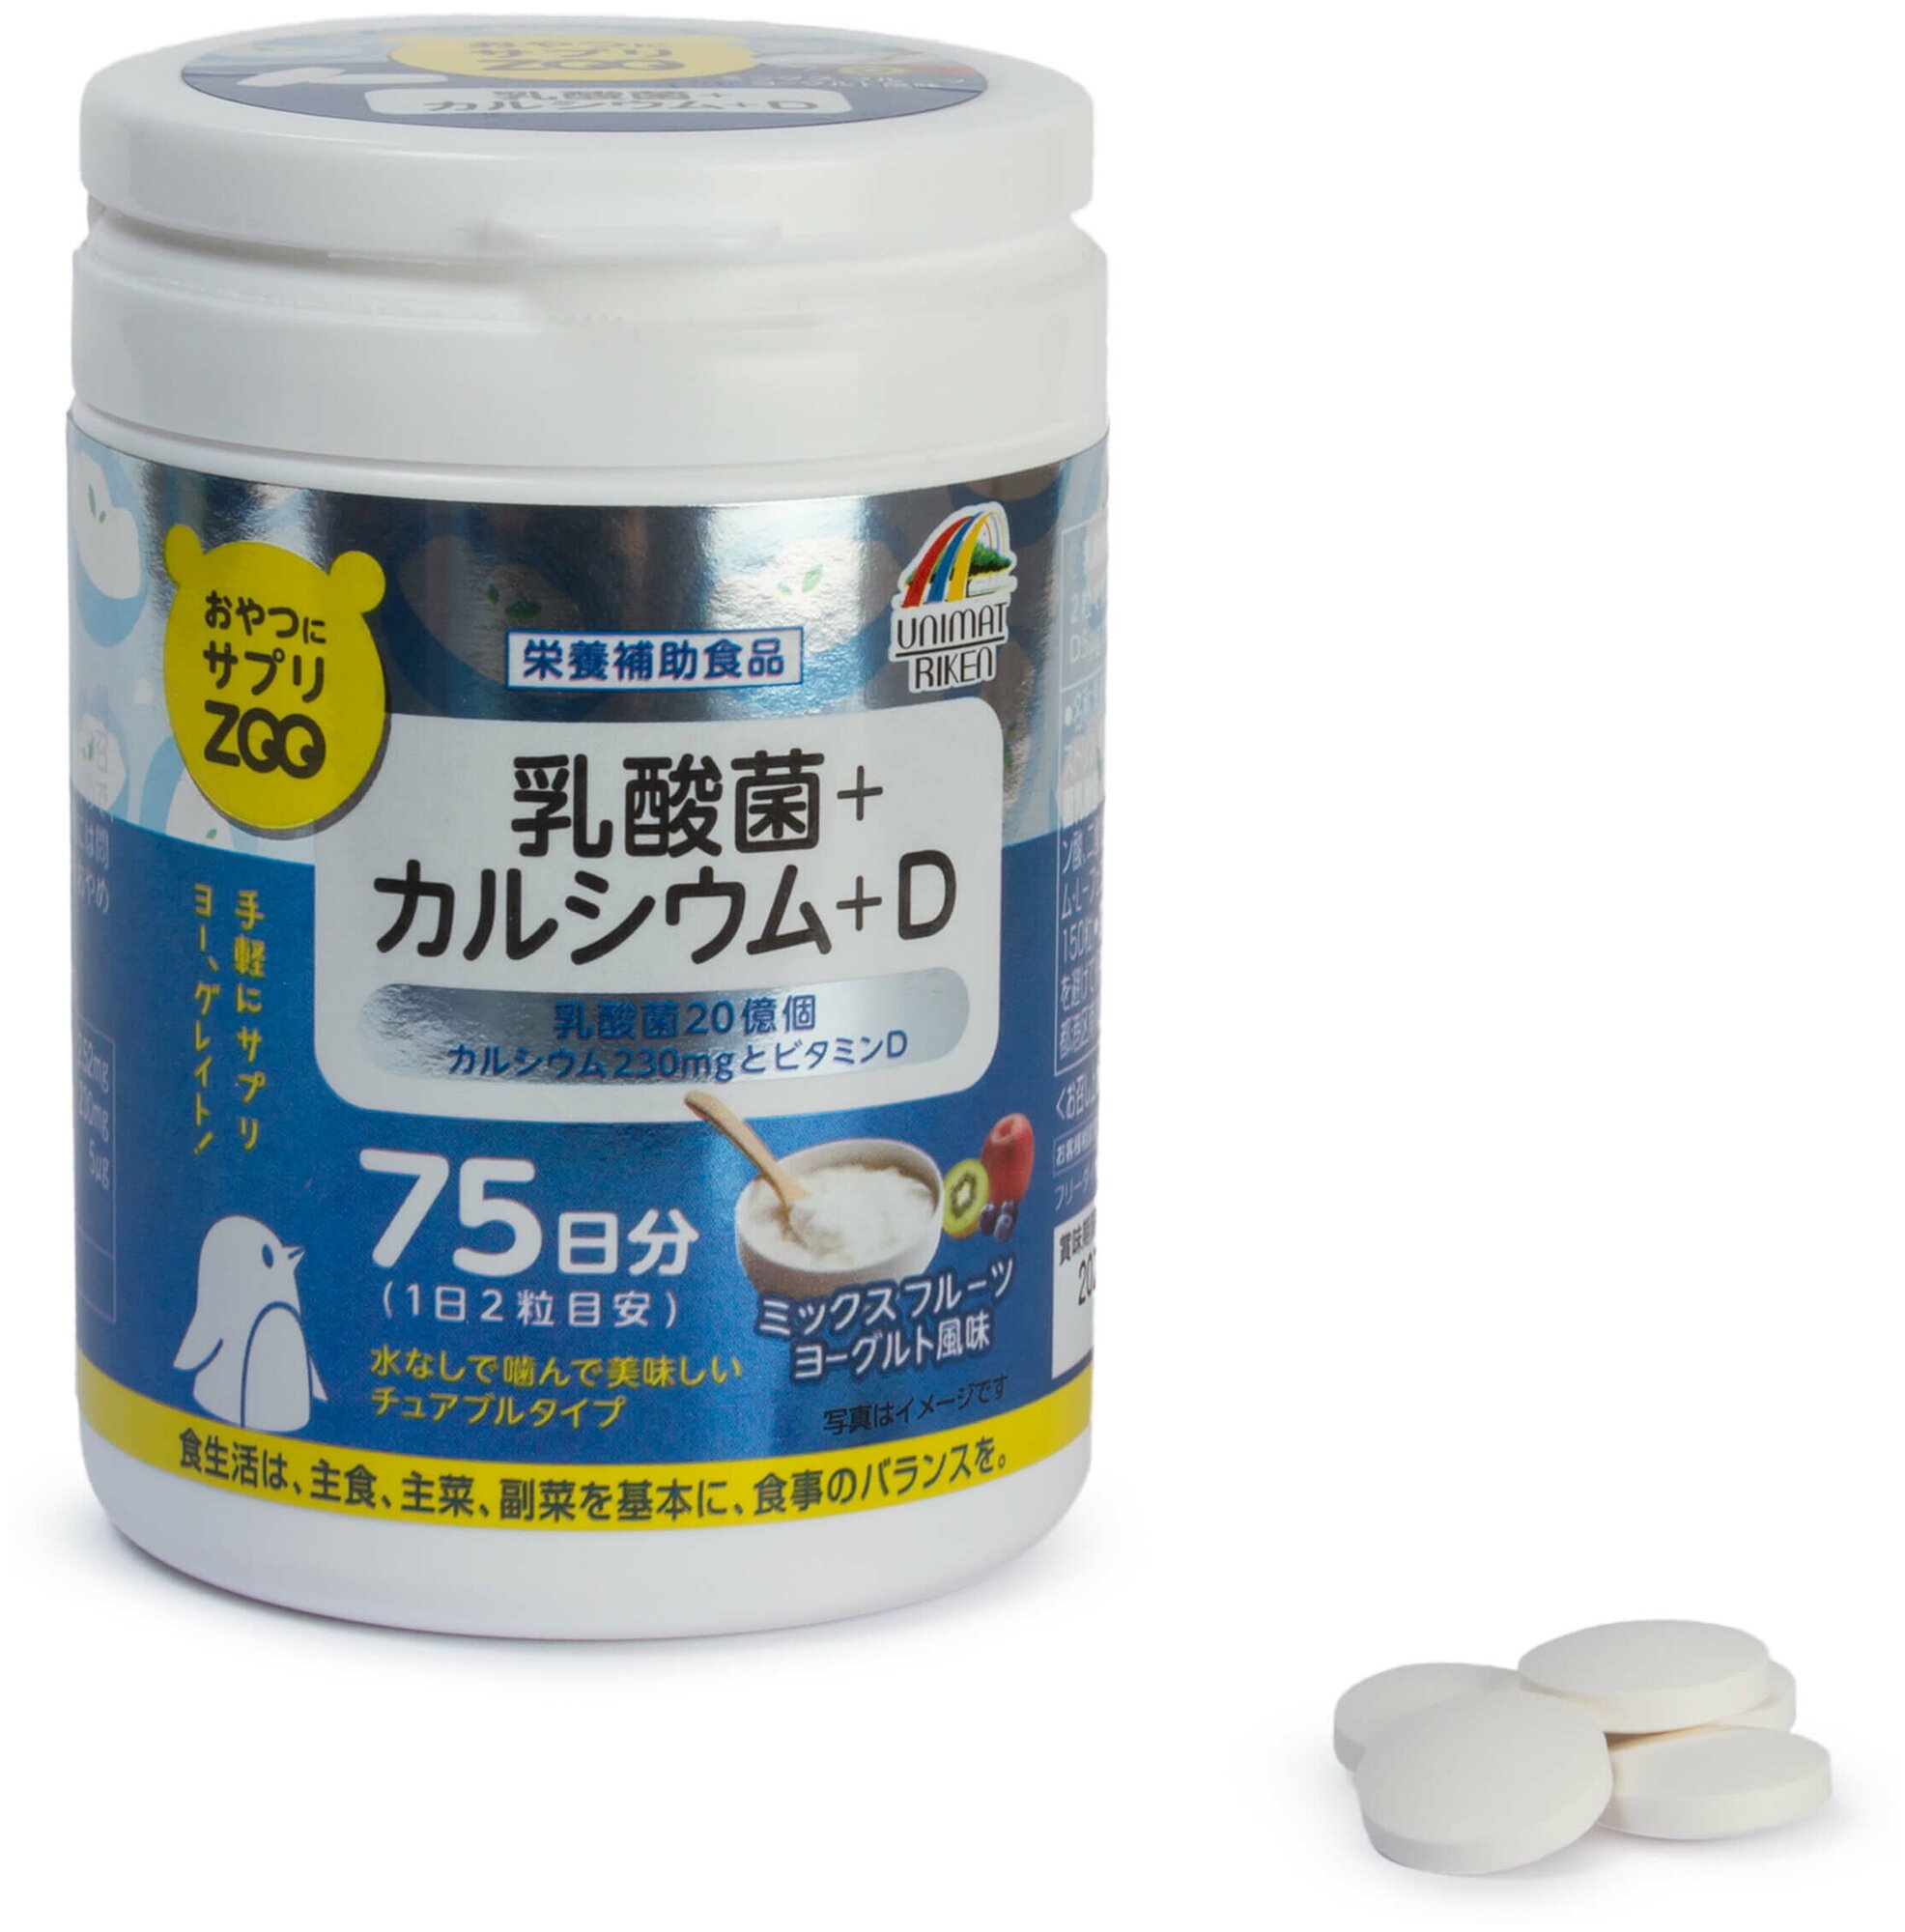 ZOO Кальций и витамин D Unimat Riken, Япония, вкус йогурта, 150 шт